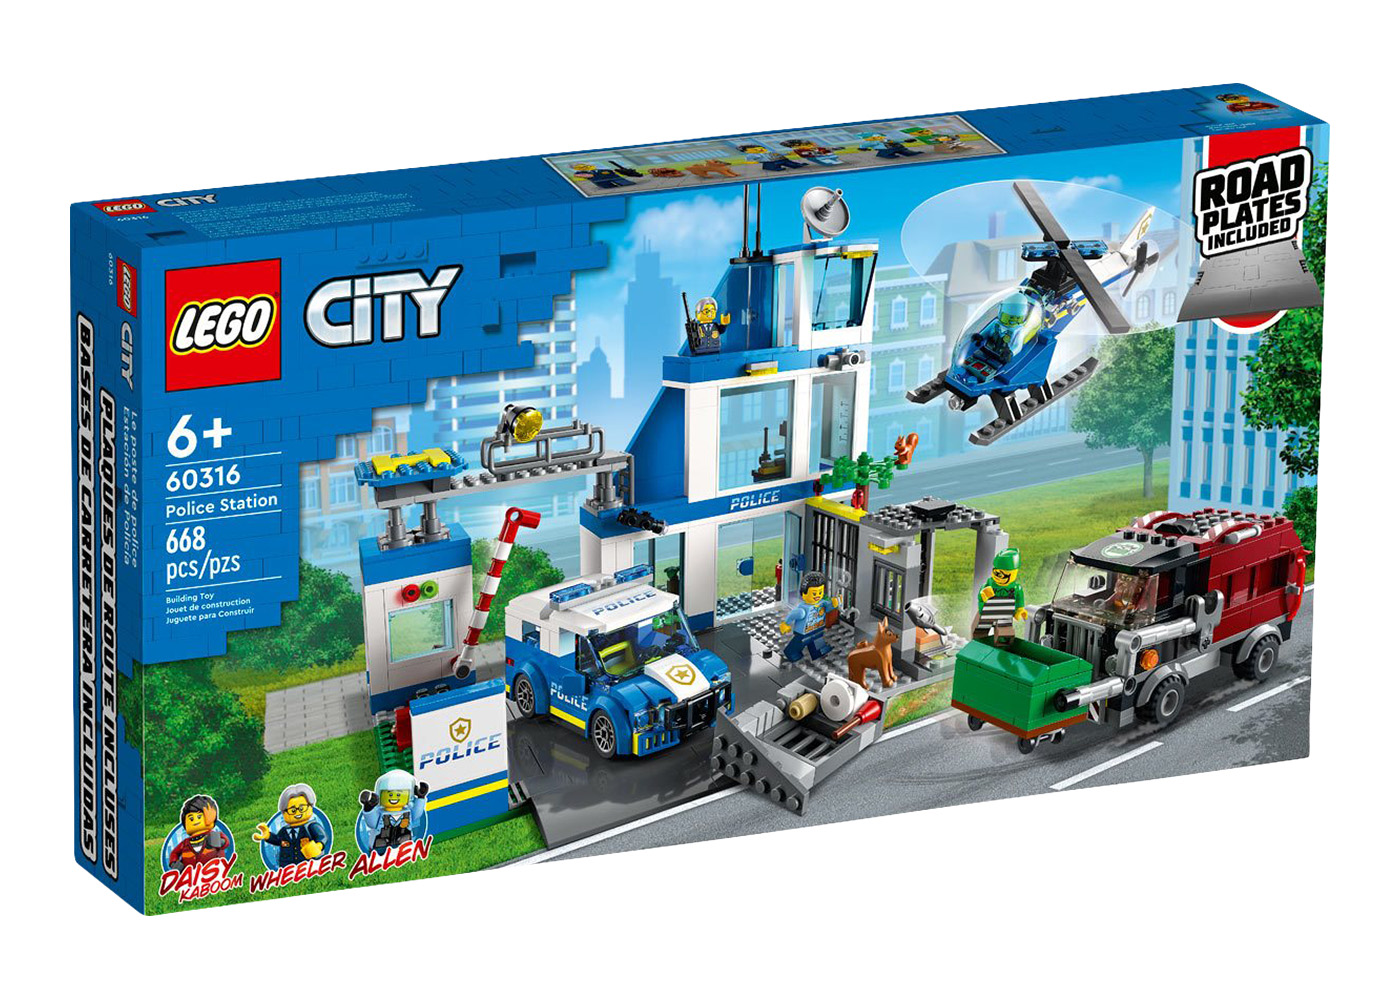 LEGO City Train Station Set 60050 - US